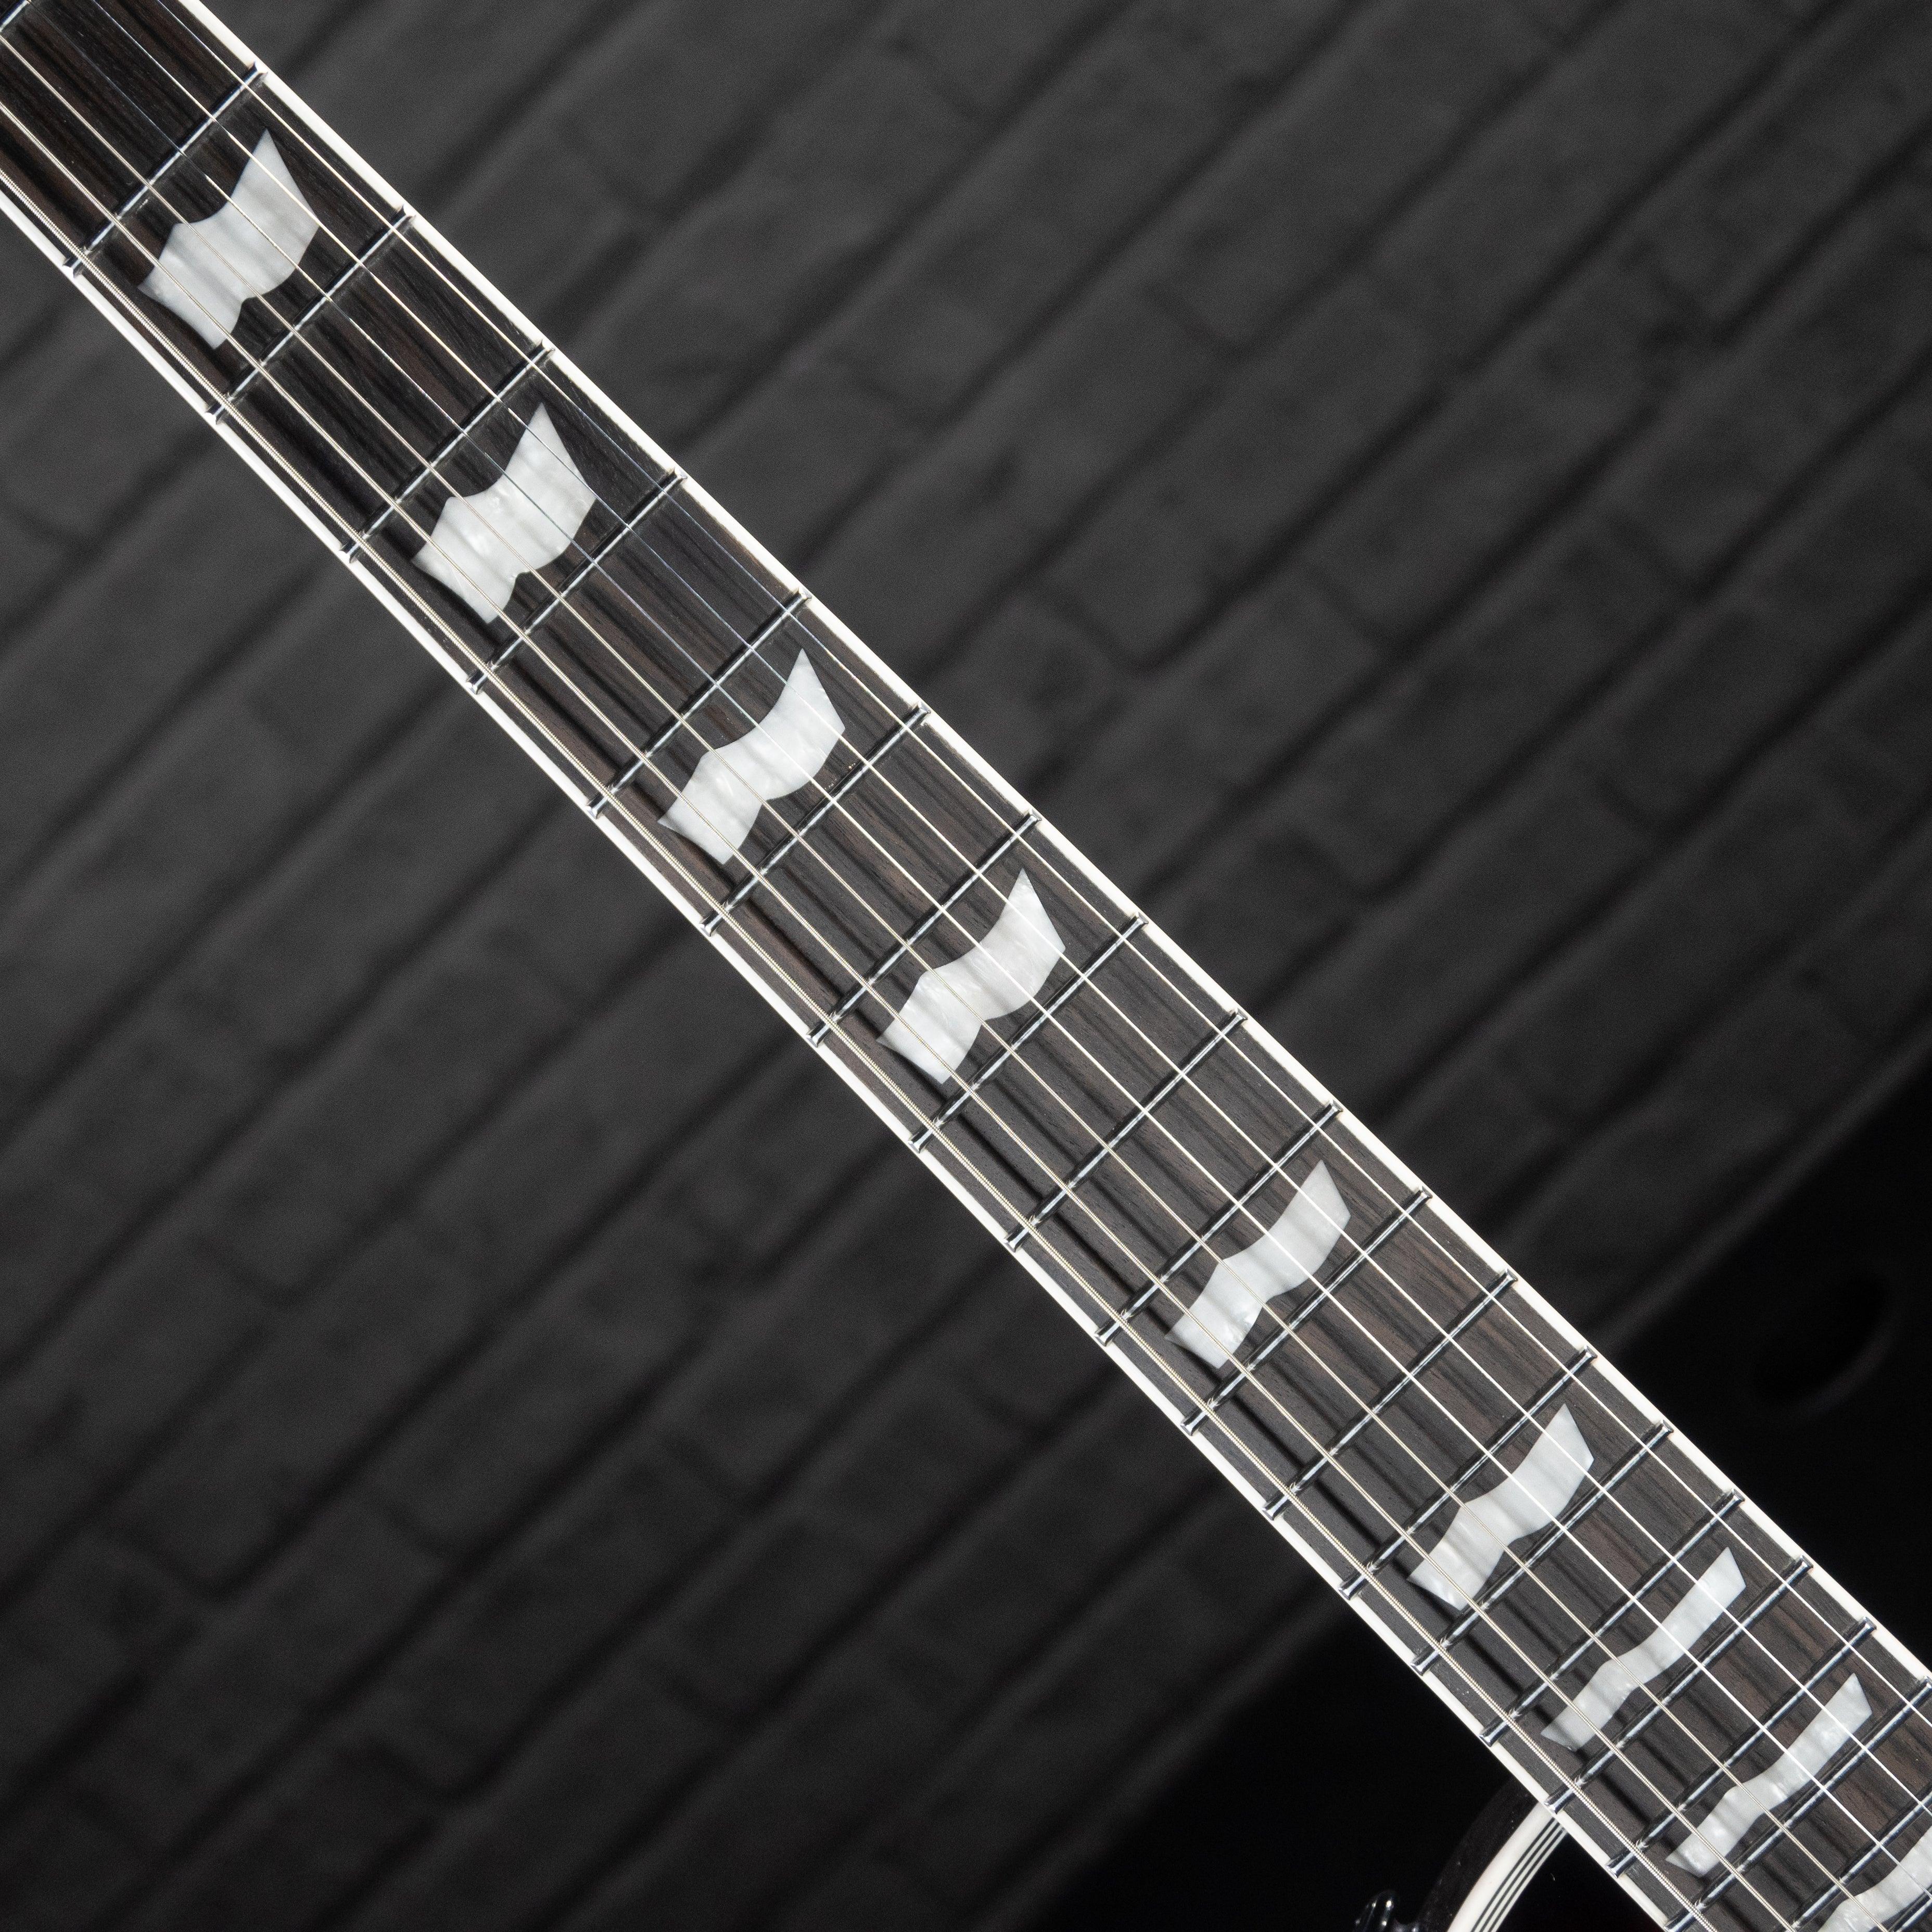 ESP LTD EC-1000ET Evertune Electric Guitar (Dark Brown Sunburst) - Impulse Music Co.